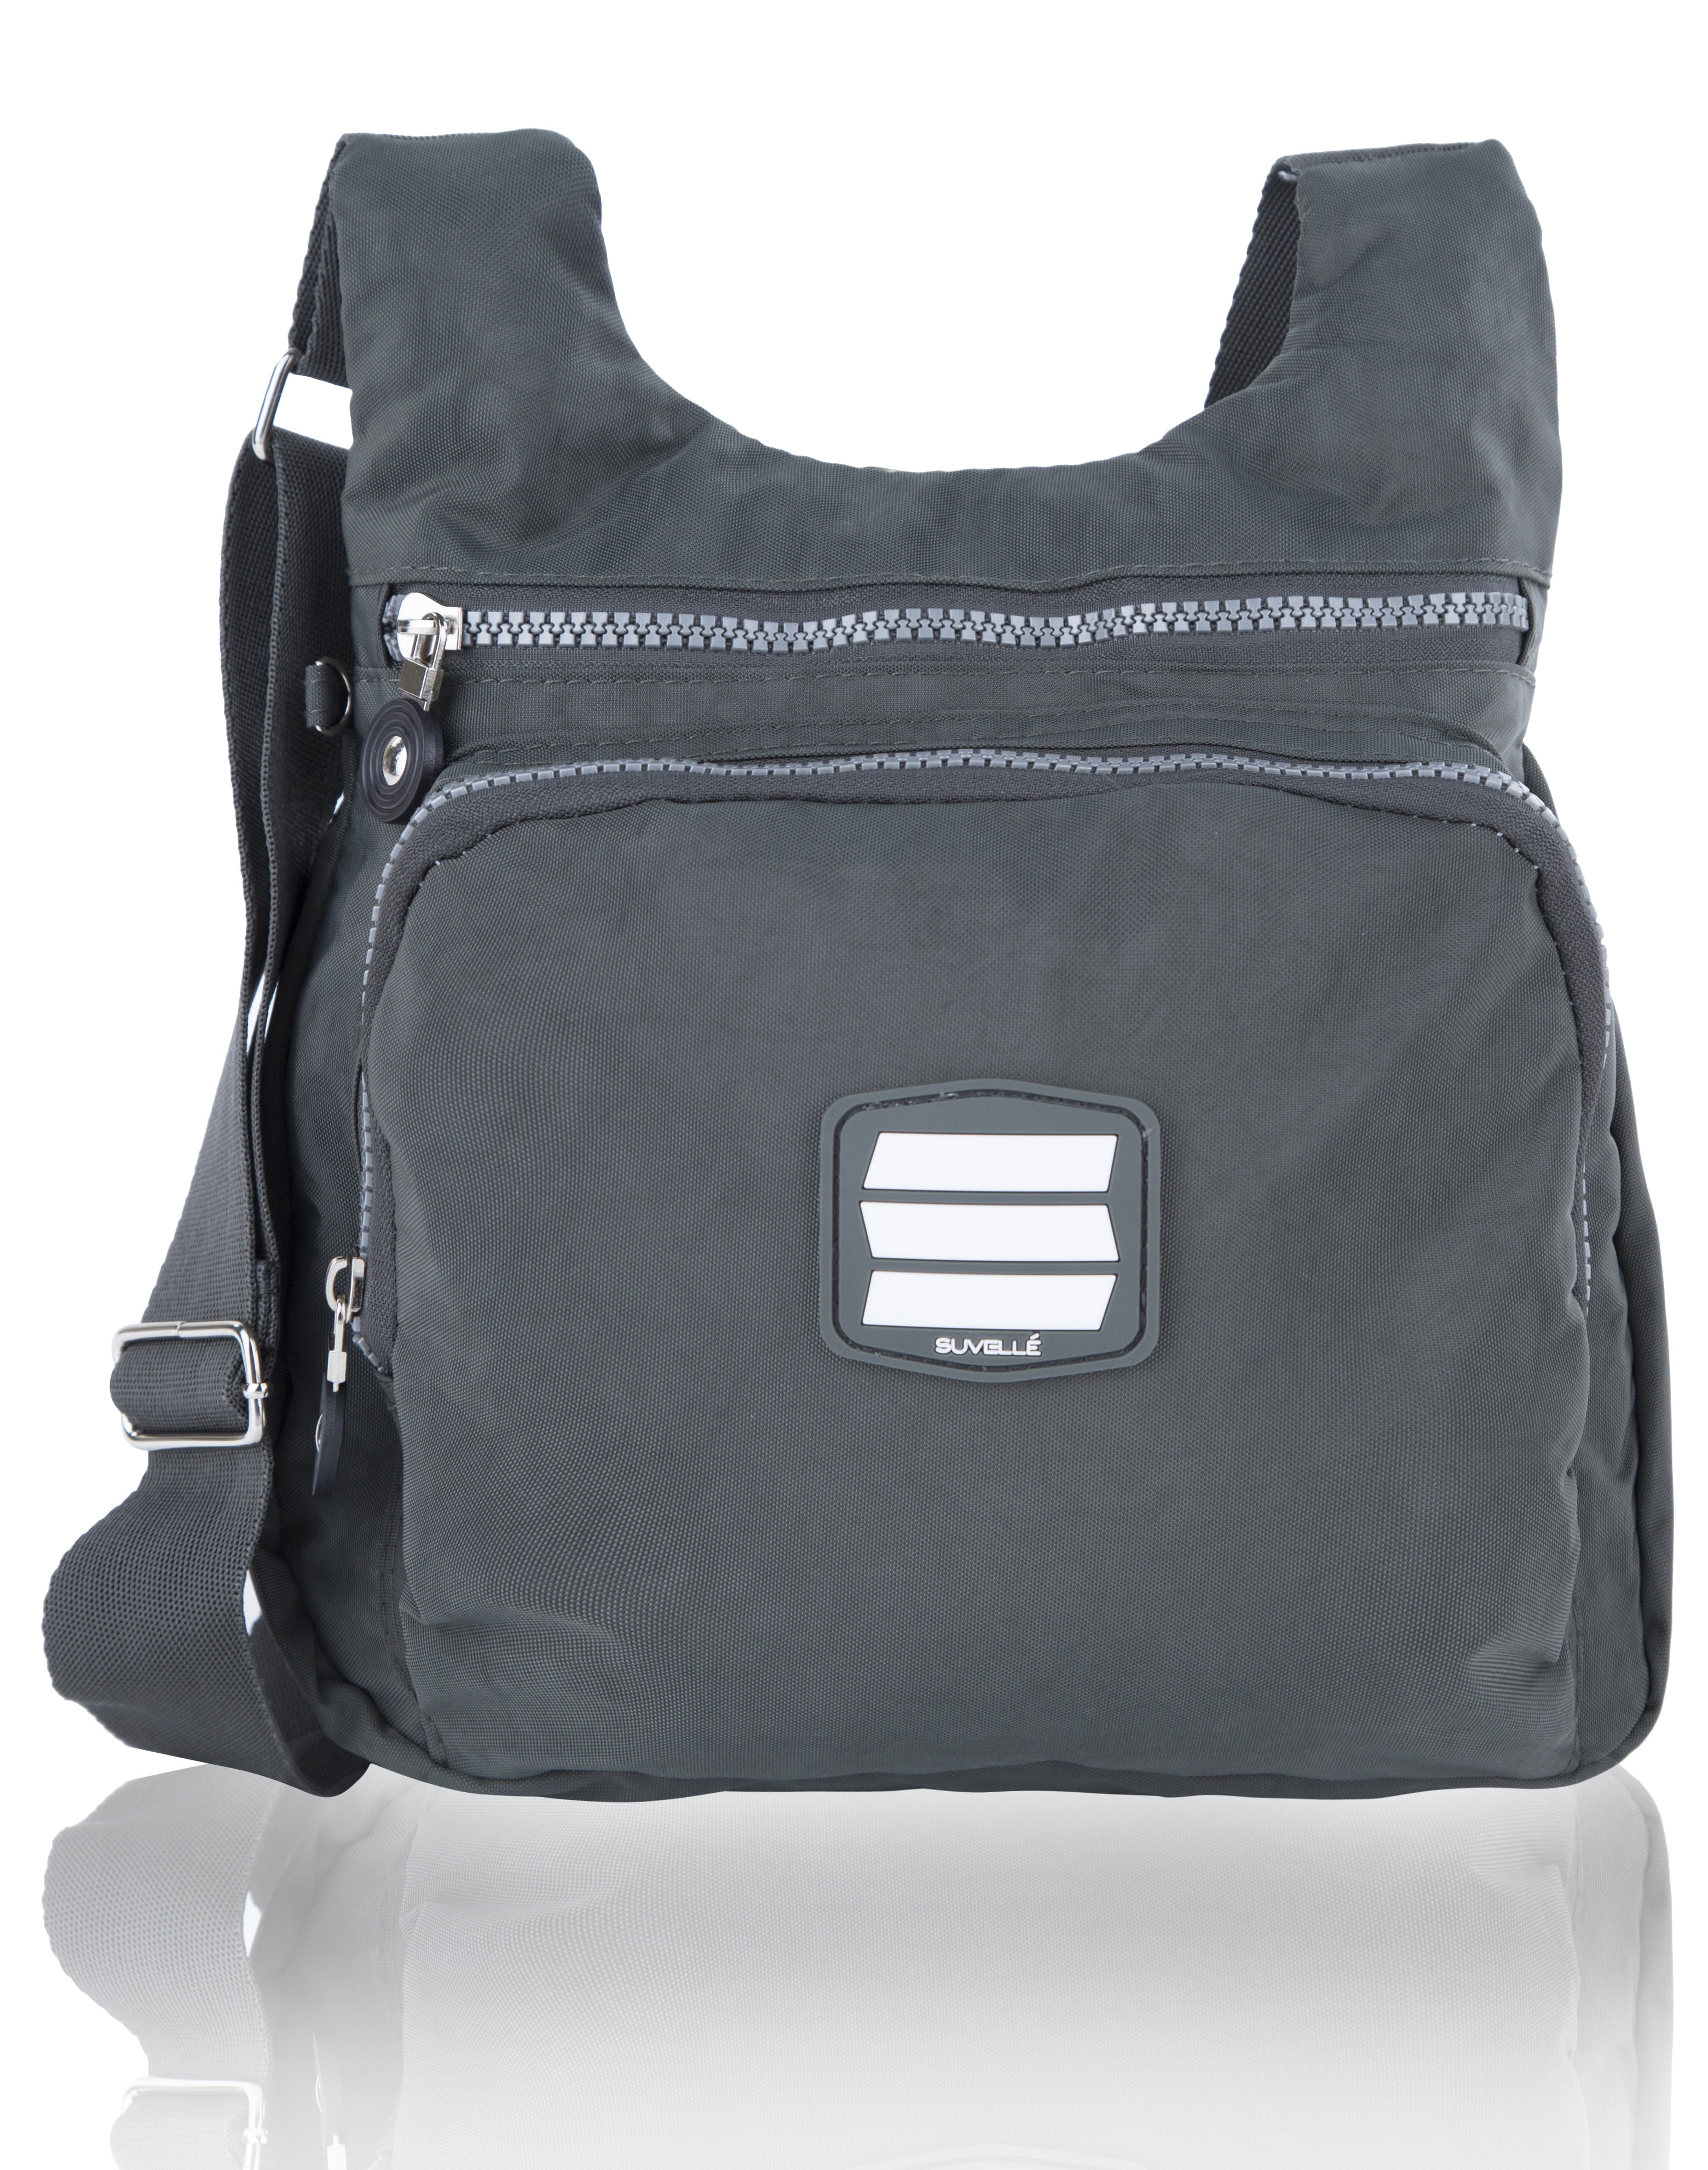 Suvelle Small City Travel Crossbody Shoulder Handbag Multi Pocket Nylon Bag NEW 